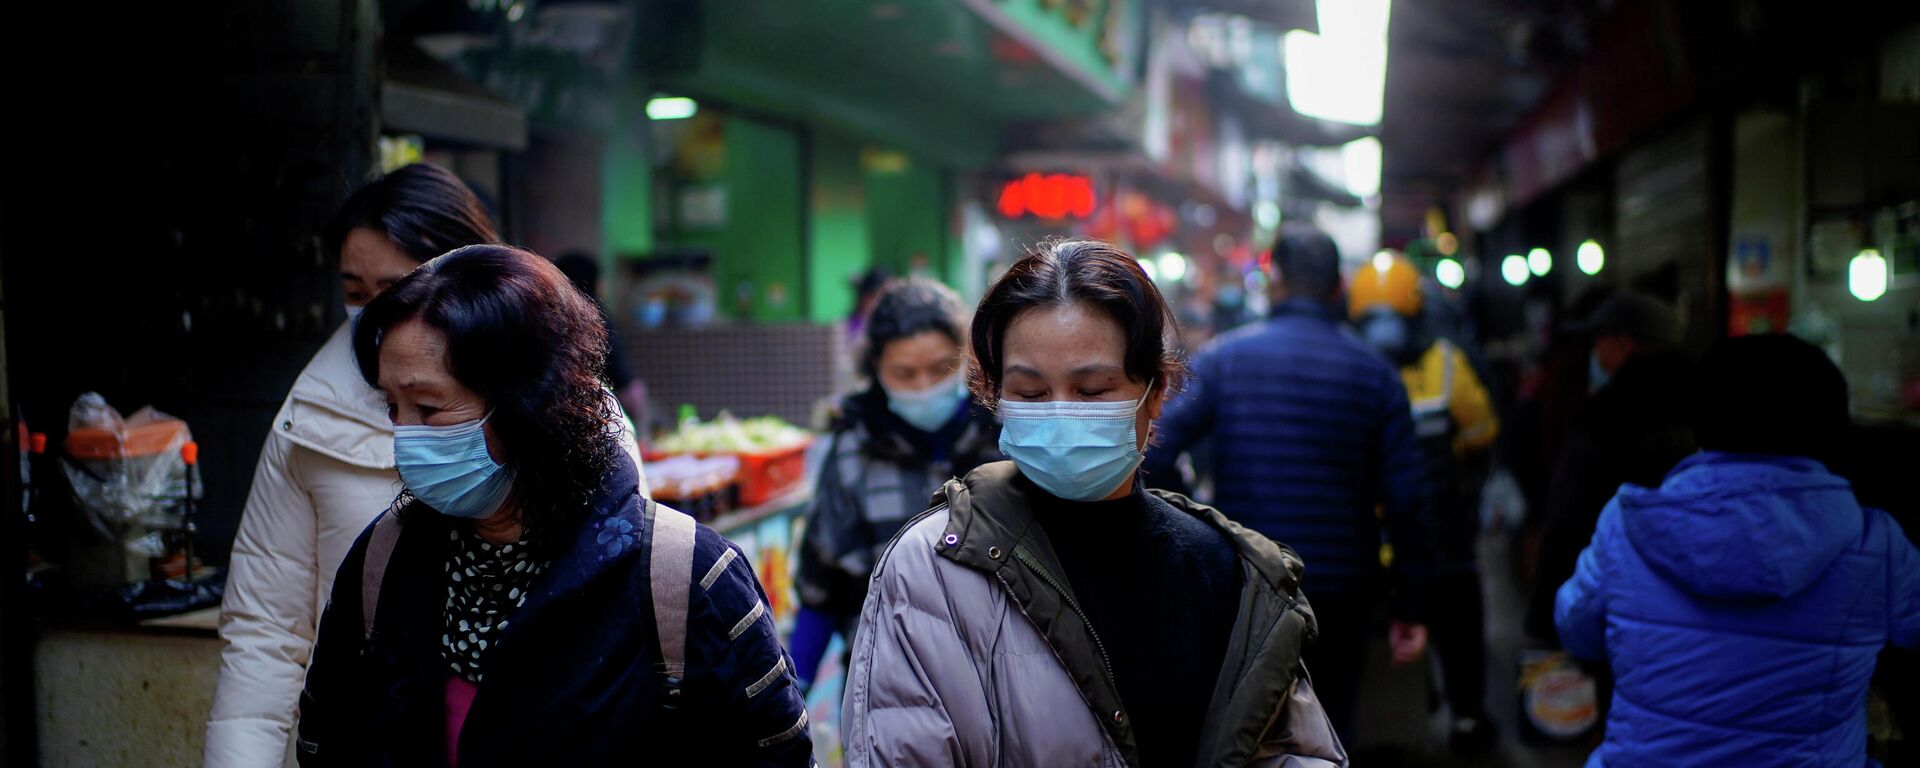 Personas con mascarillas en un mercado callejero en los primeros meses del brote del coronavirus en Wuhan, provincia de Hubei, China, el 8 de febrero de 2021 - Sputnik Mundo, 1920, 31.10.2021